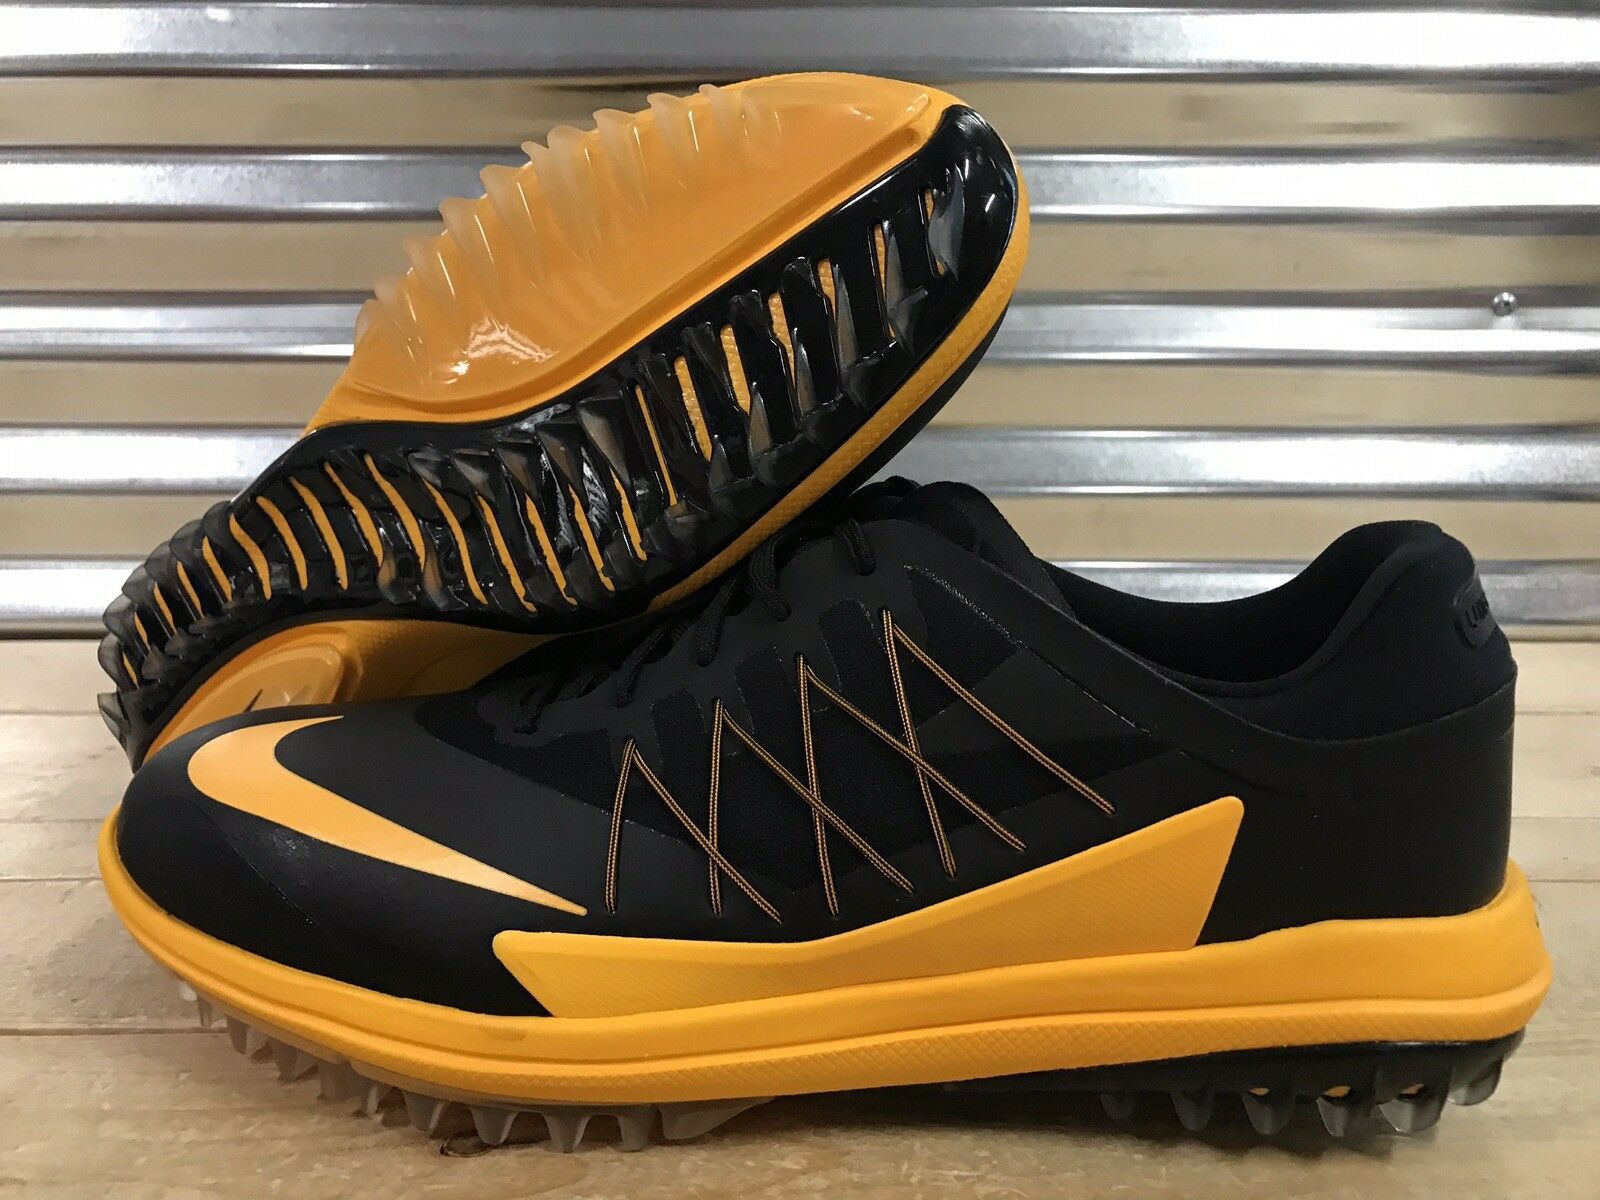 Nike lunar golf shoes